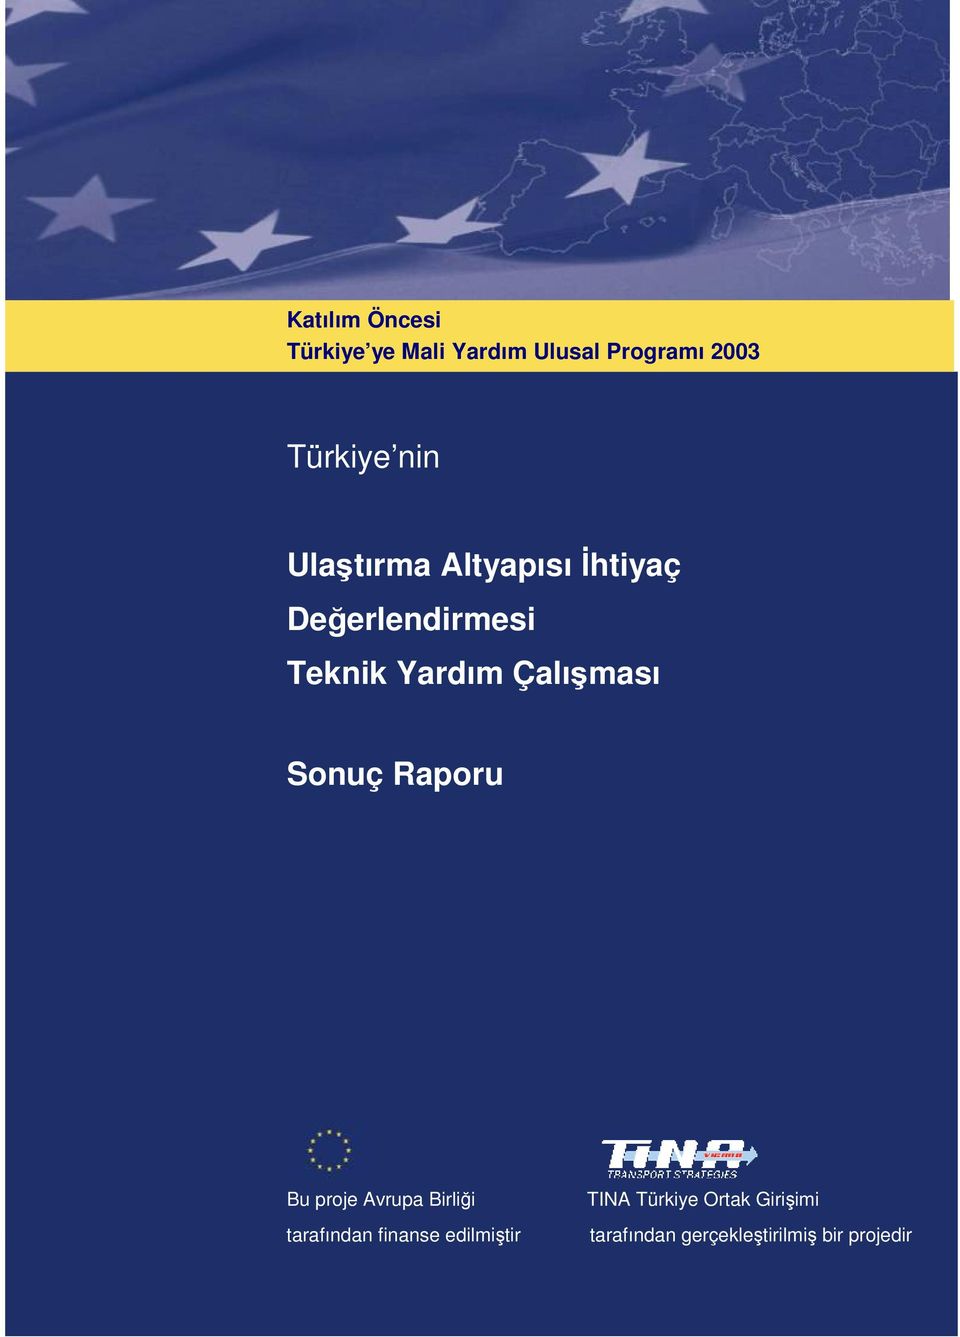 TINA Türkiye Ortak Girişimi tarafından finanse edilmiştir tarafından